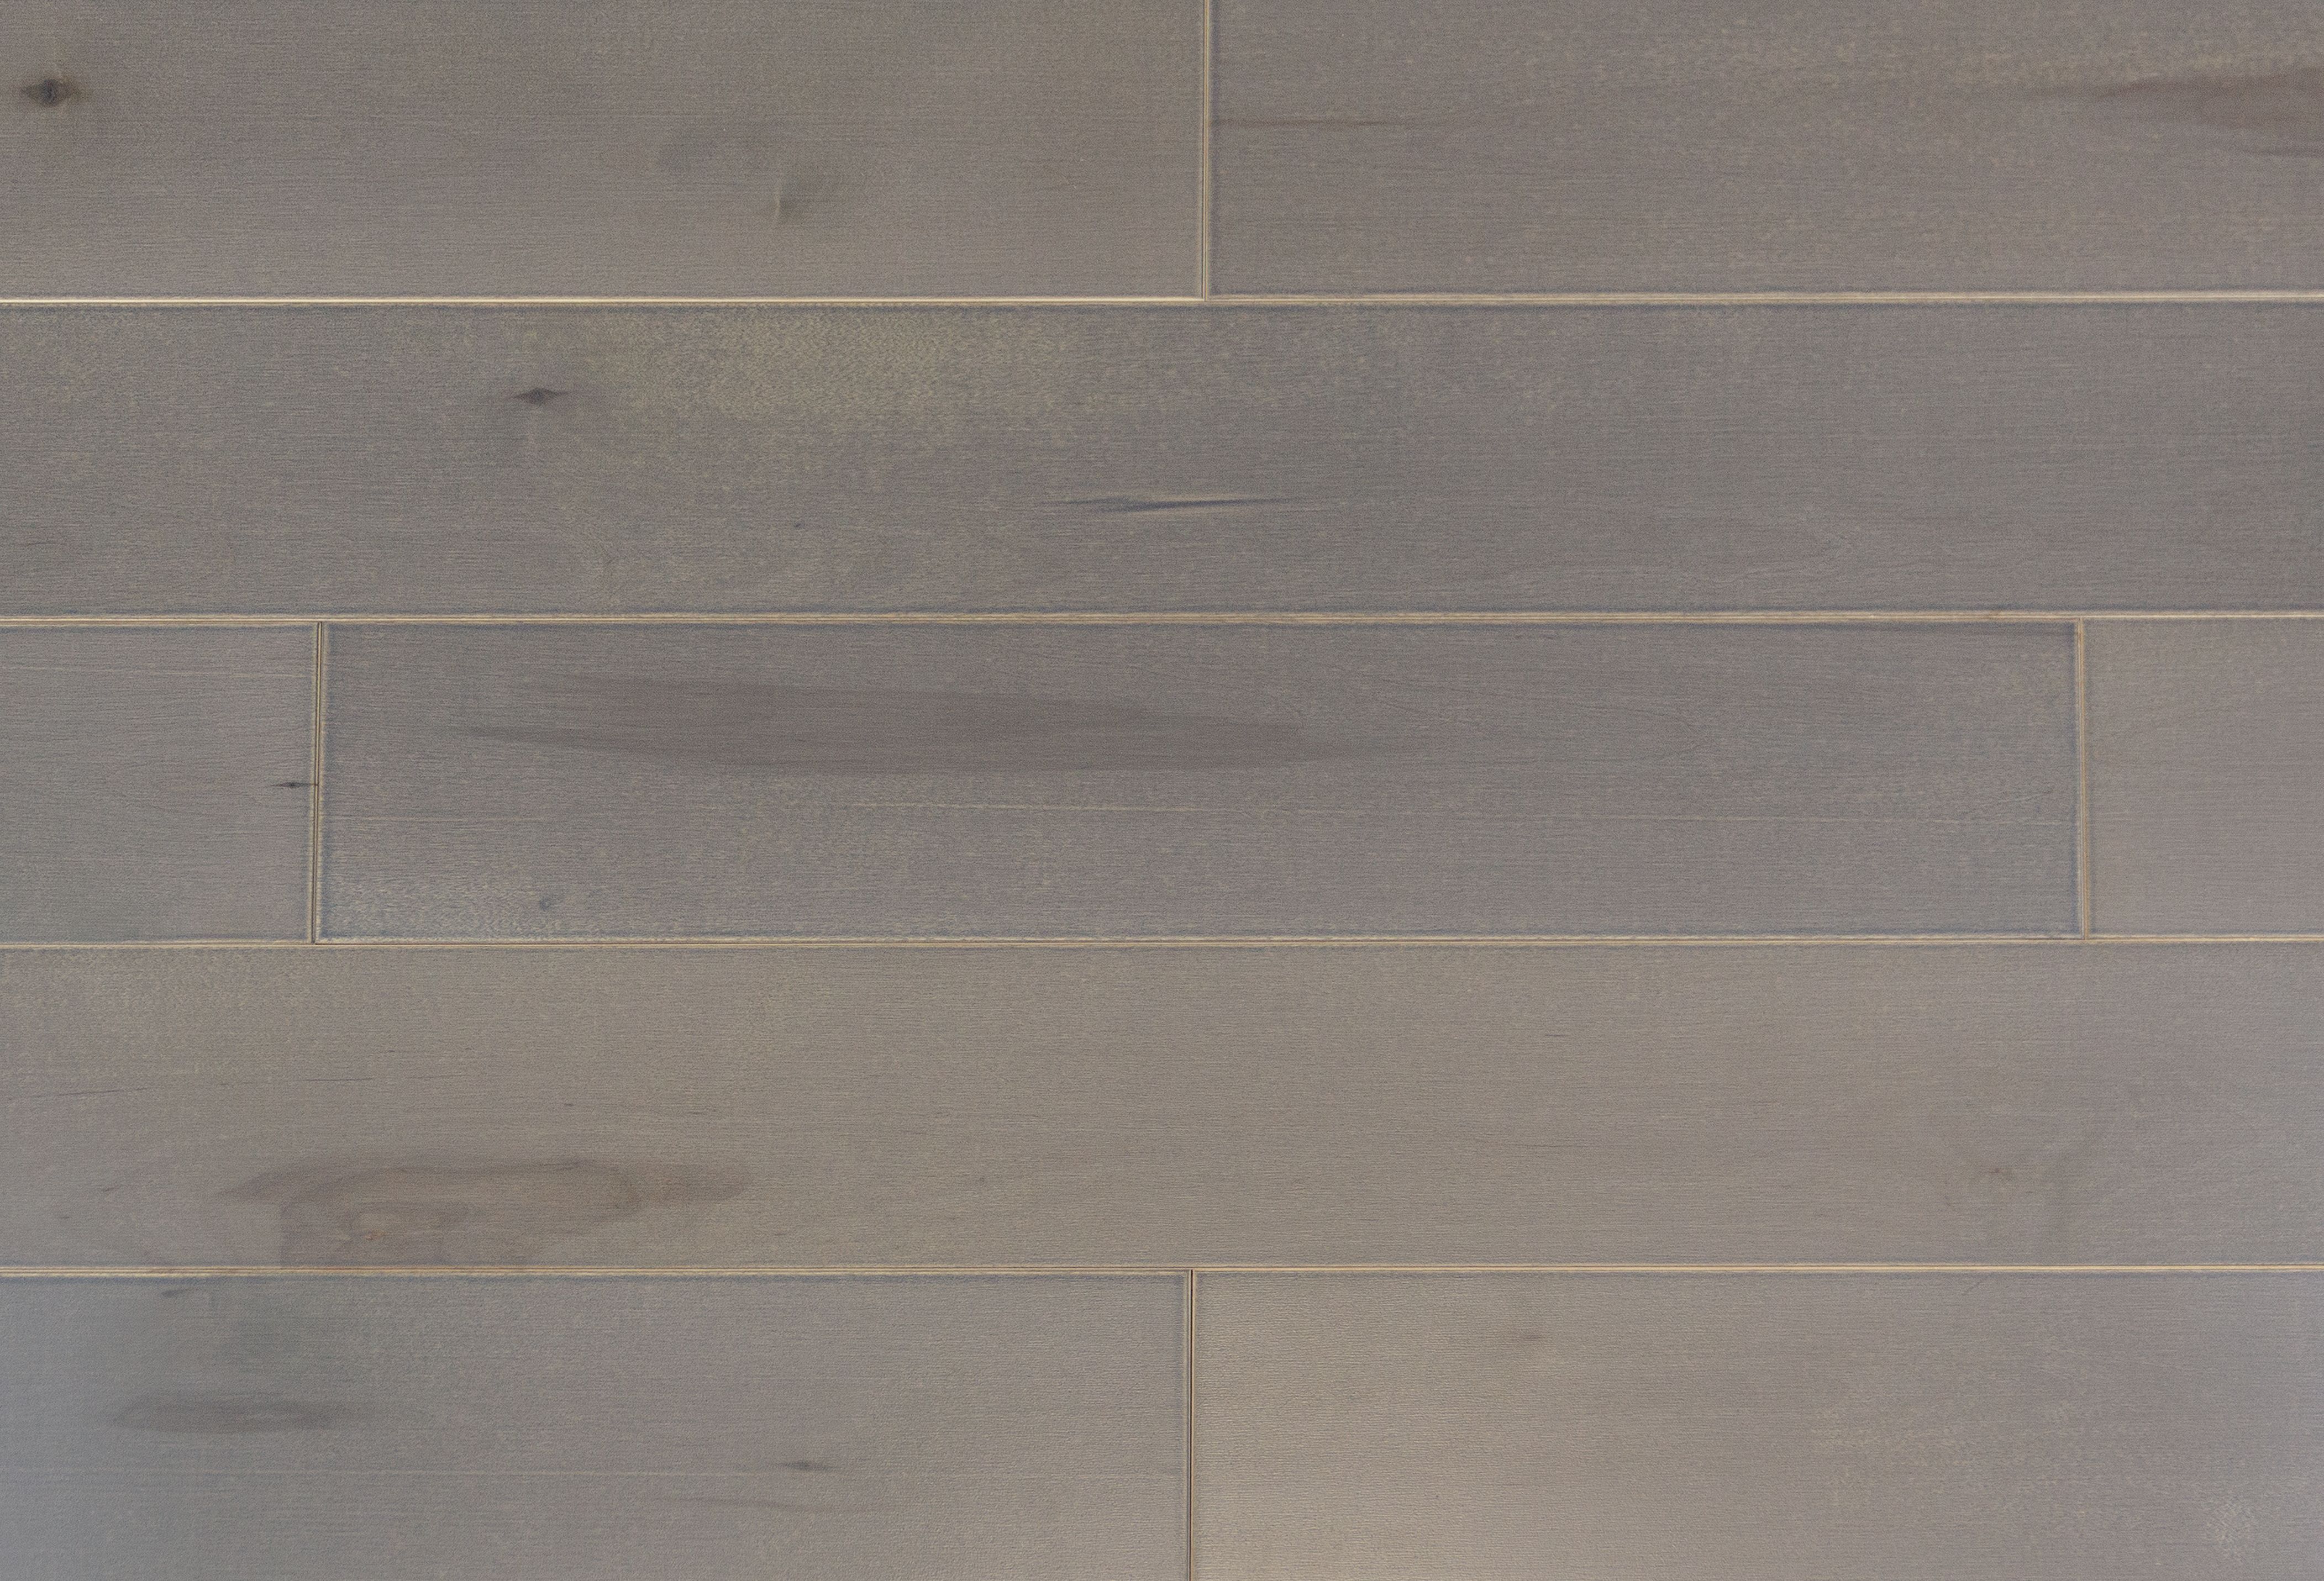 Паркет Сибирская береза с покрытием Норманский бриз палубная раскладка доска разделочная доляна 32×20×2 см с выемками для пальцев береза